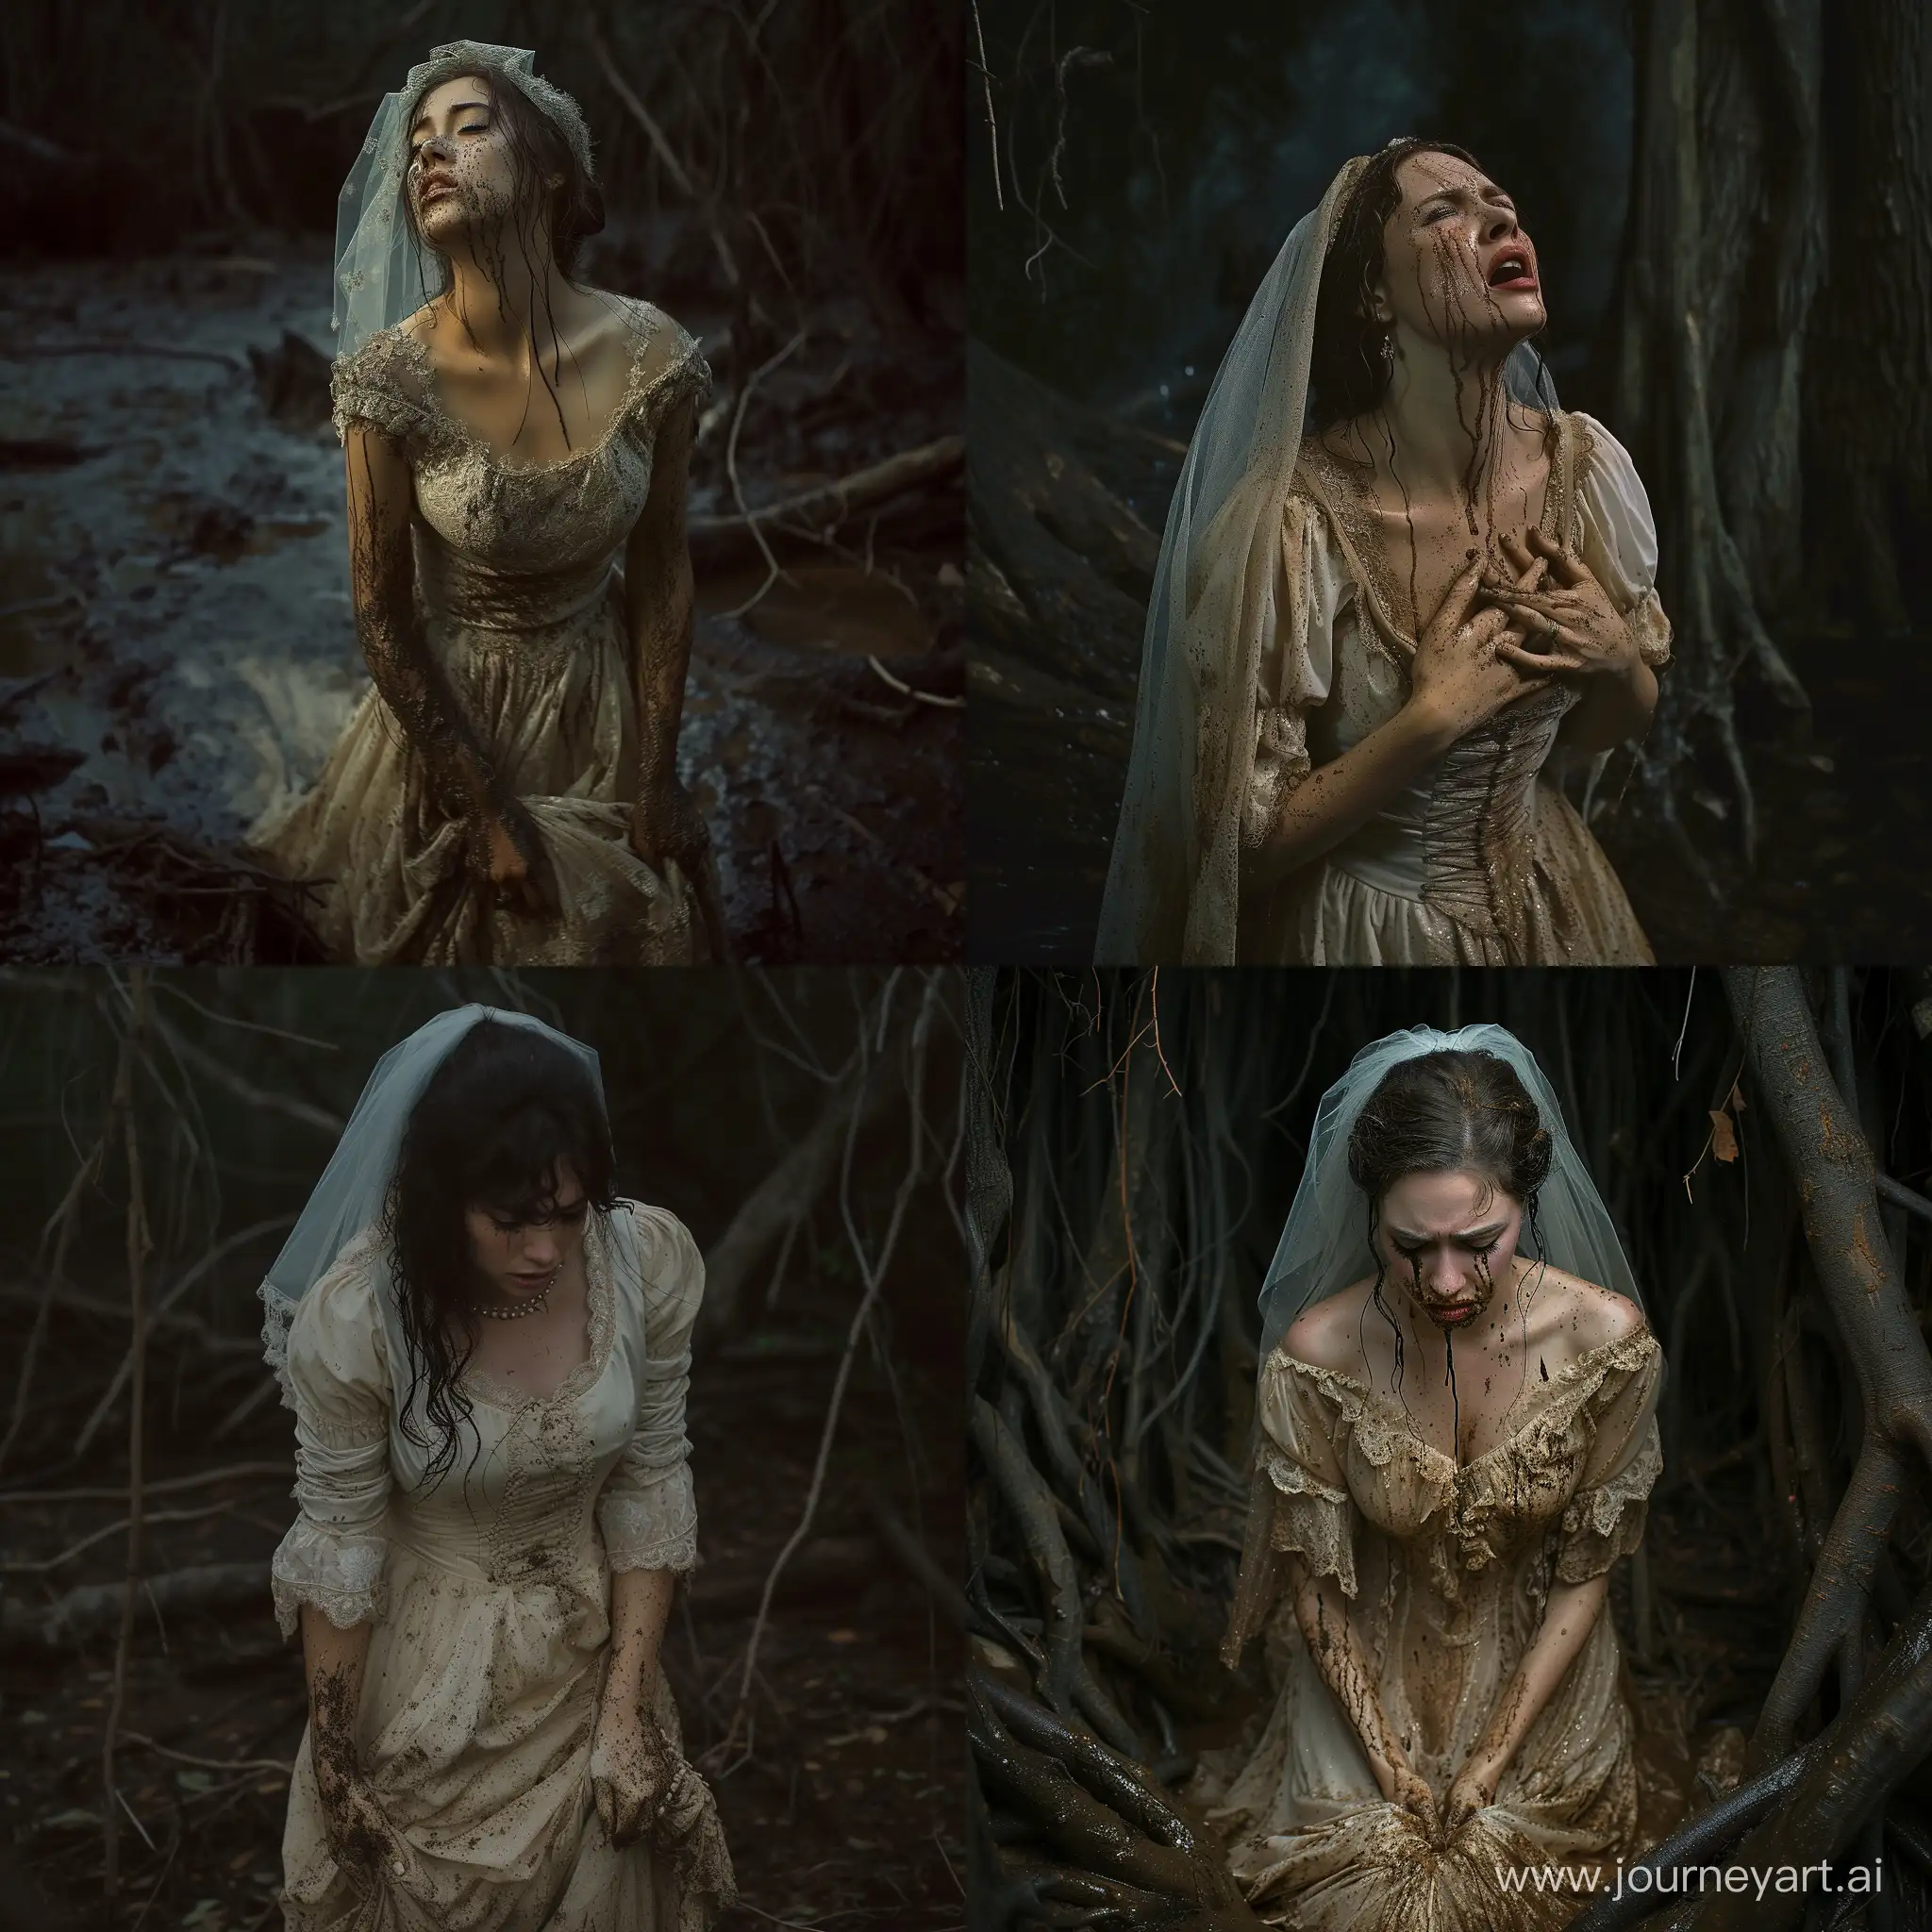 Una mujer vestida de traje de  novia con velo llorado en un bosque tenebroso, vestido sucio de barro